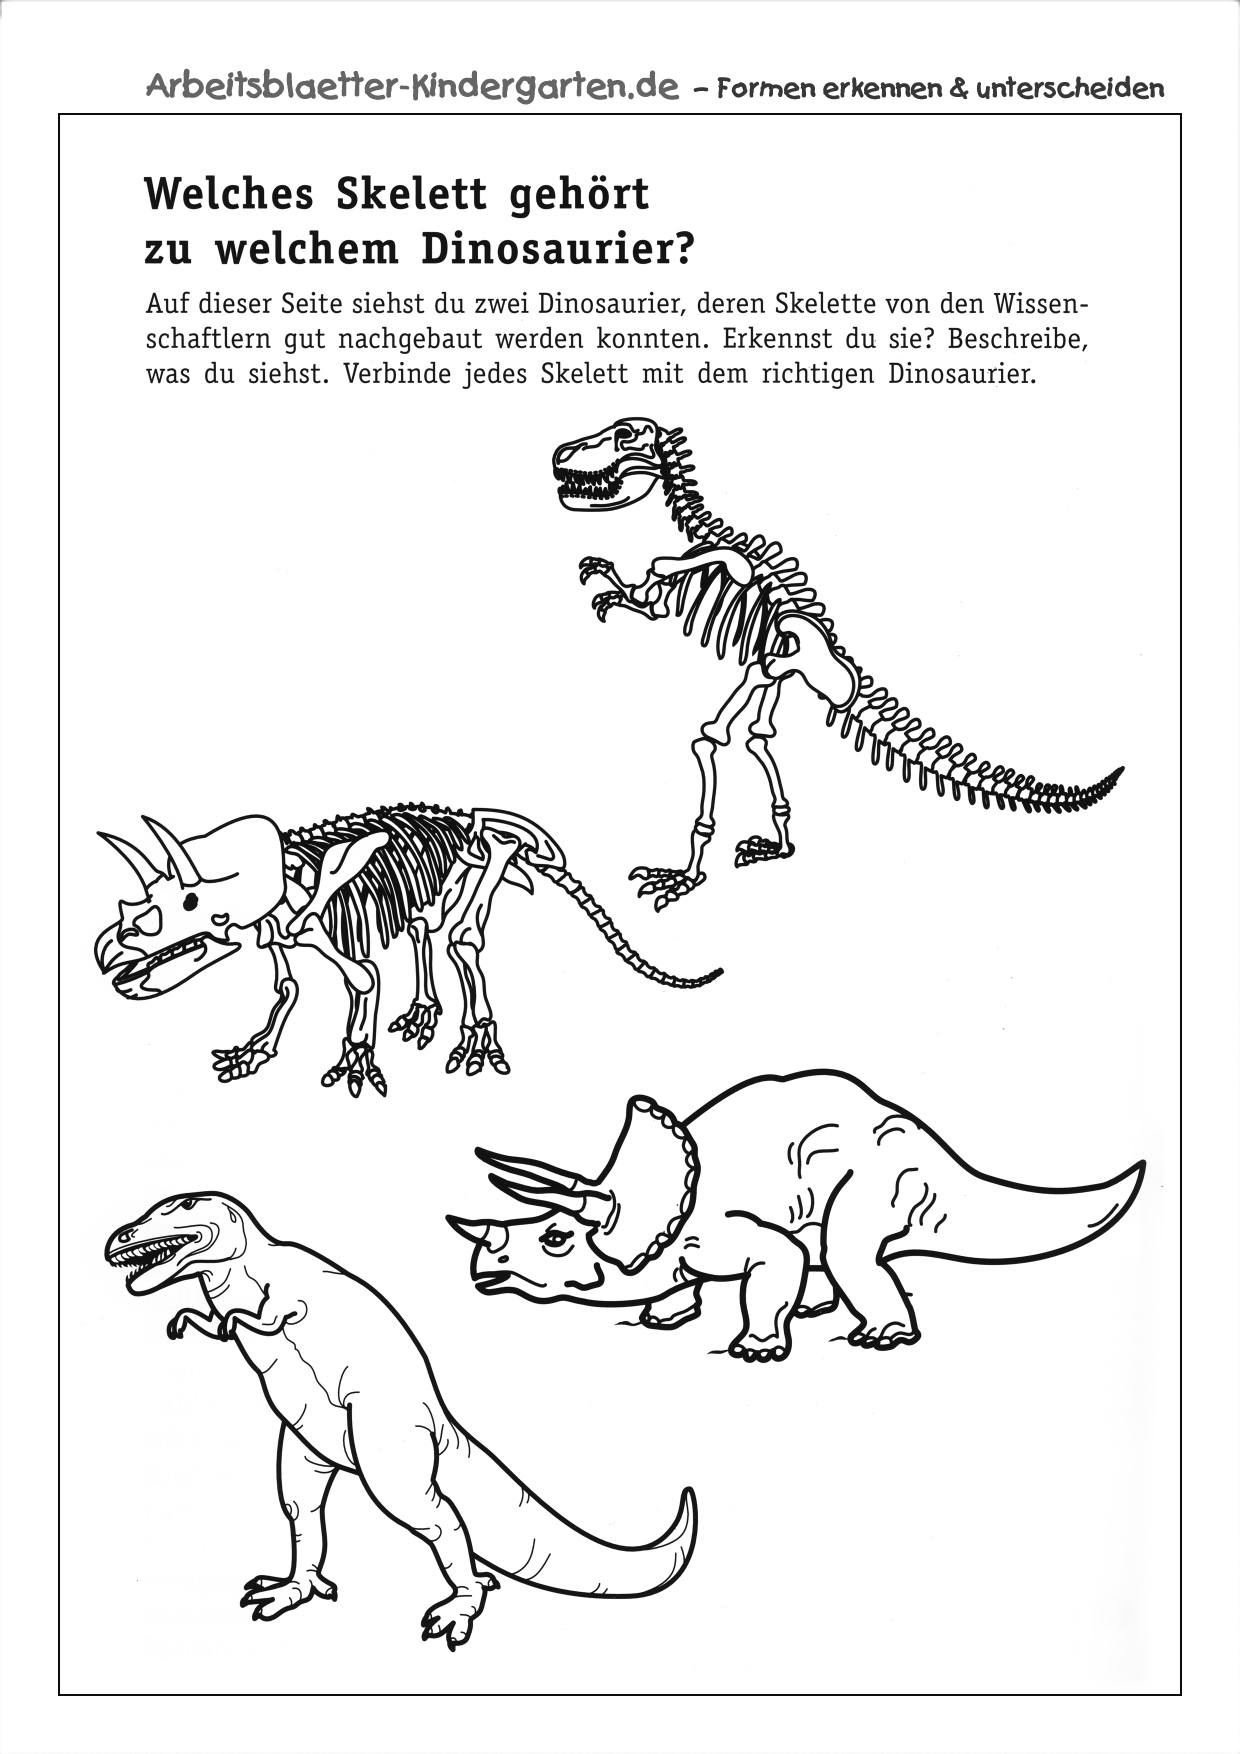 Arbeitsblatt Dinosaurierskelett